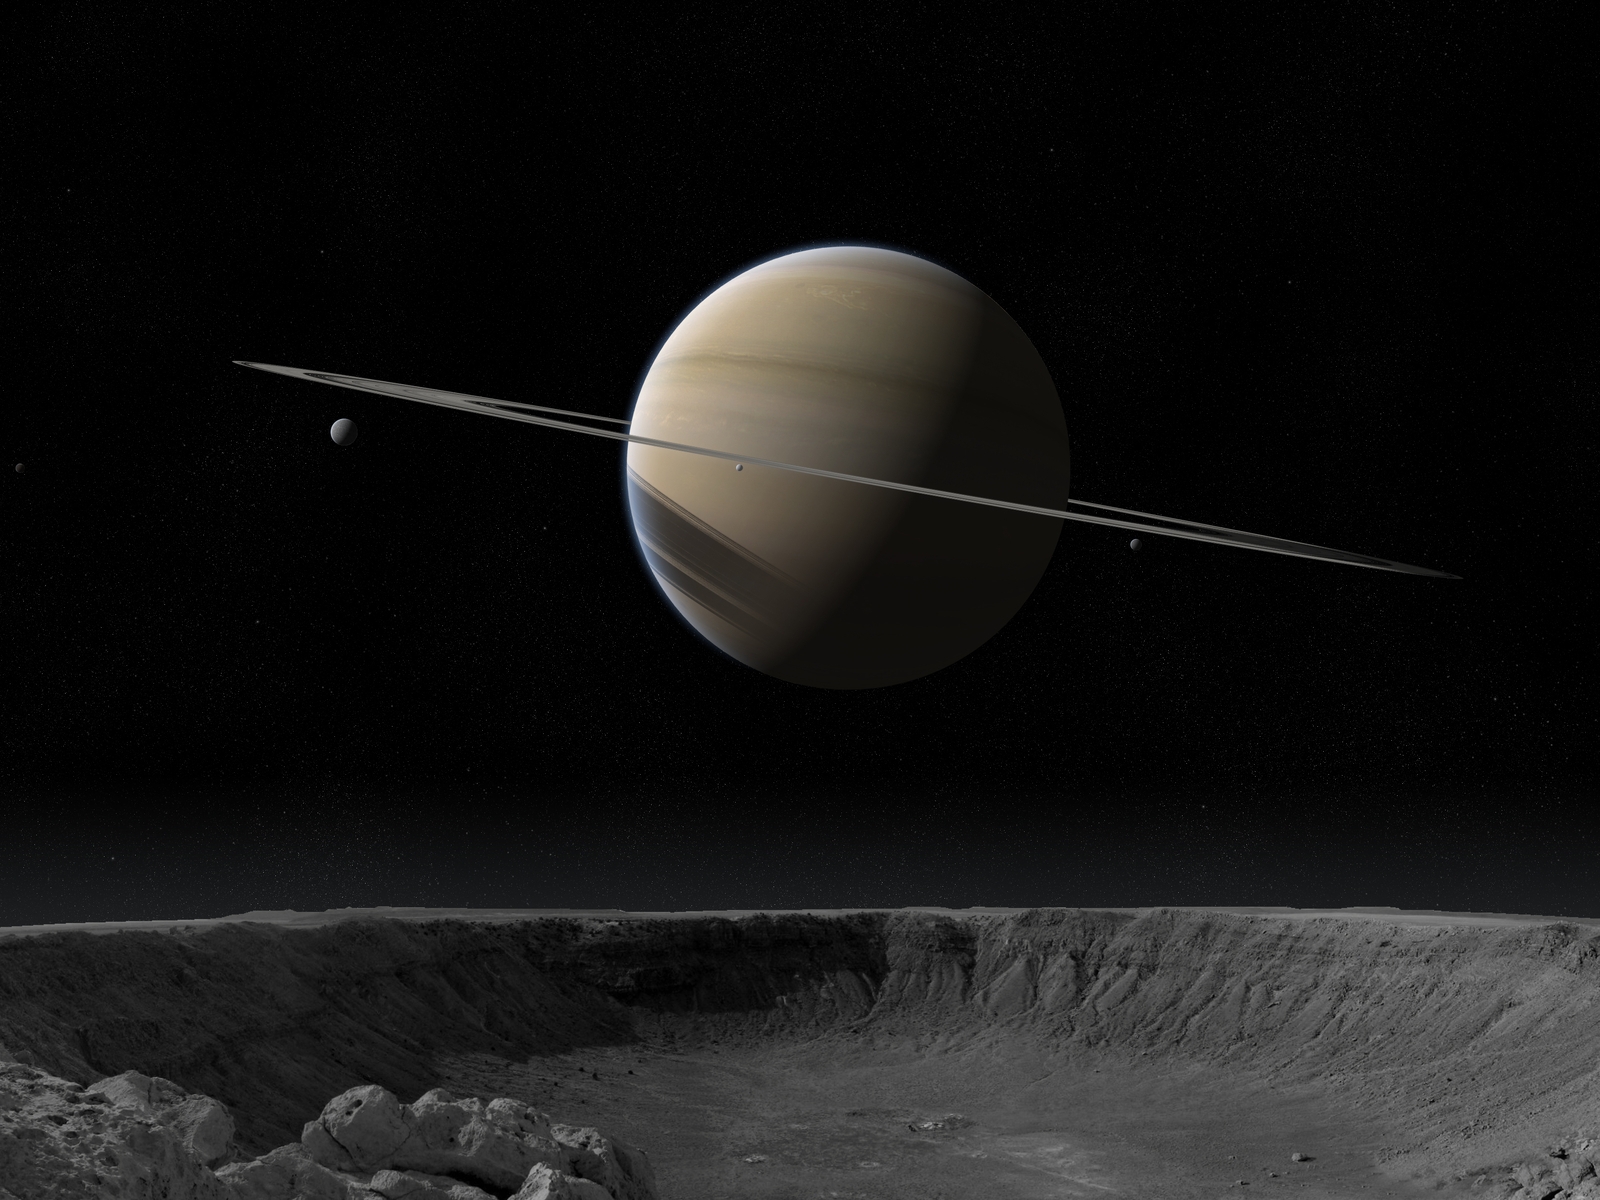 Картинка: Планета, гигант, газовый шар, Сатурн, кольца, спутники, космос, поверхность, кратер, камни